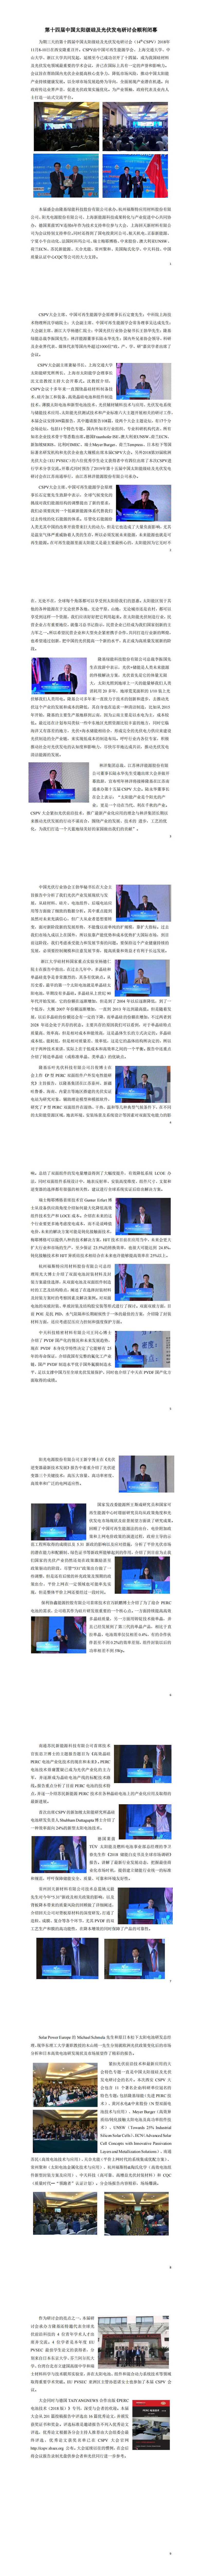 第十四届中国太阳级硅及光伏发电研讨会顺利闭幕_00.jpg